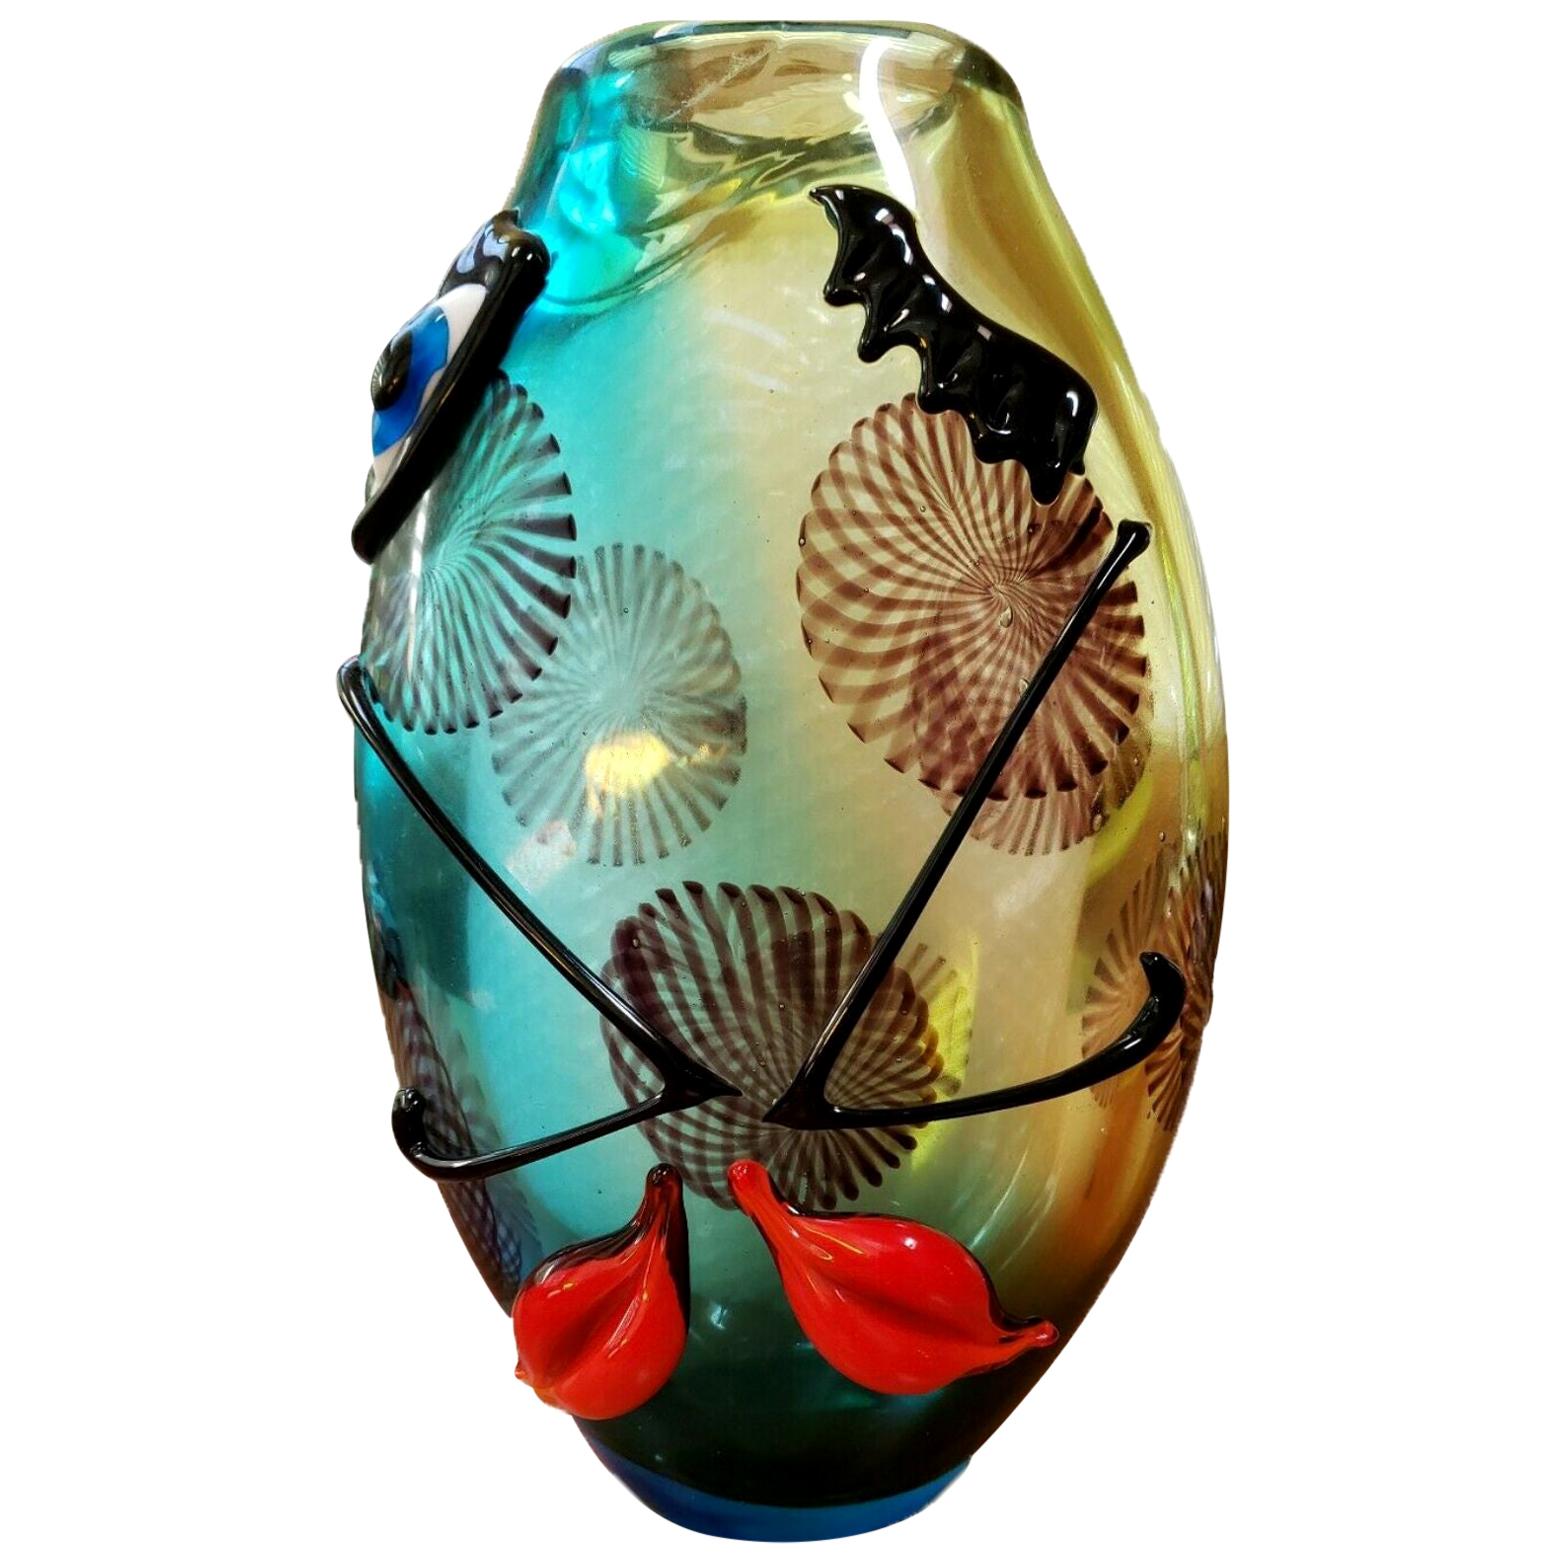 Grand vase en verre d'art de Murano avec visages et motifs abstraits style Picasso trouvés dans le commerce